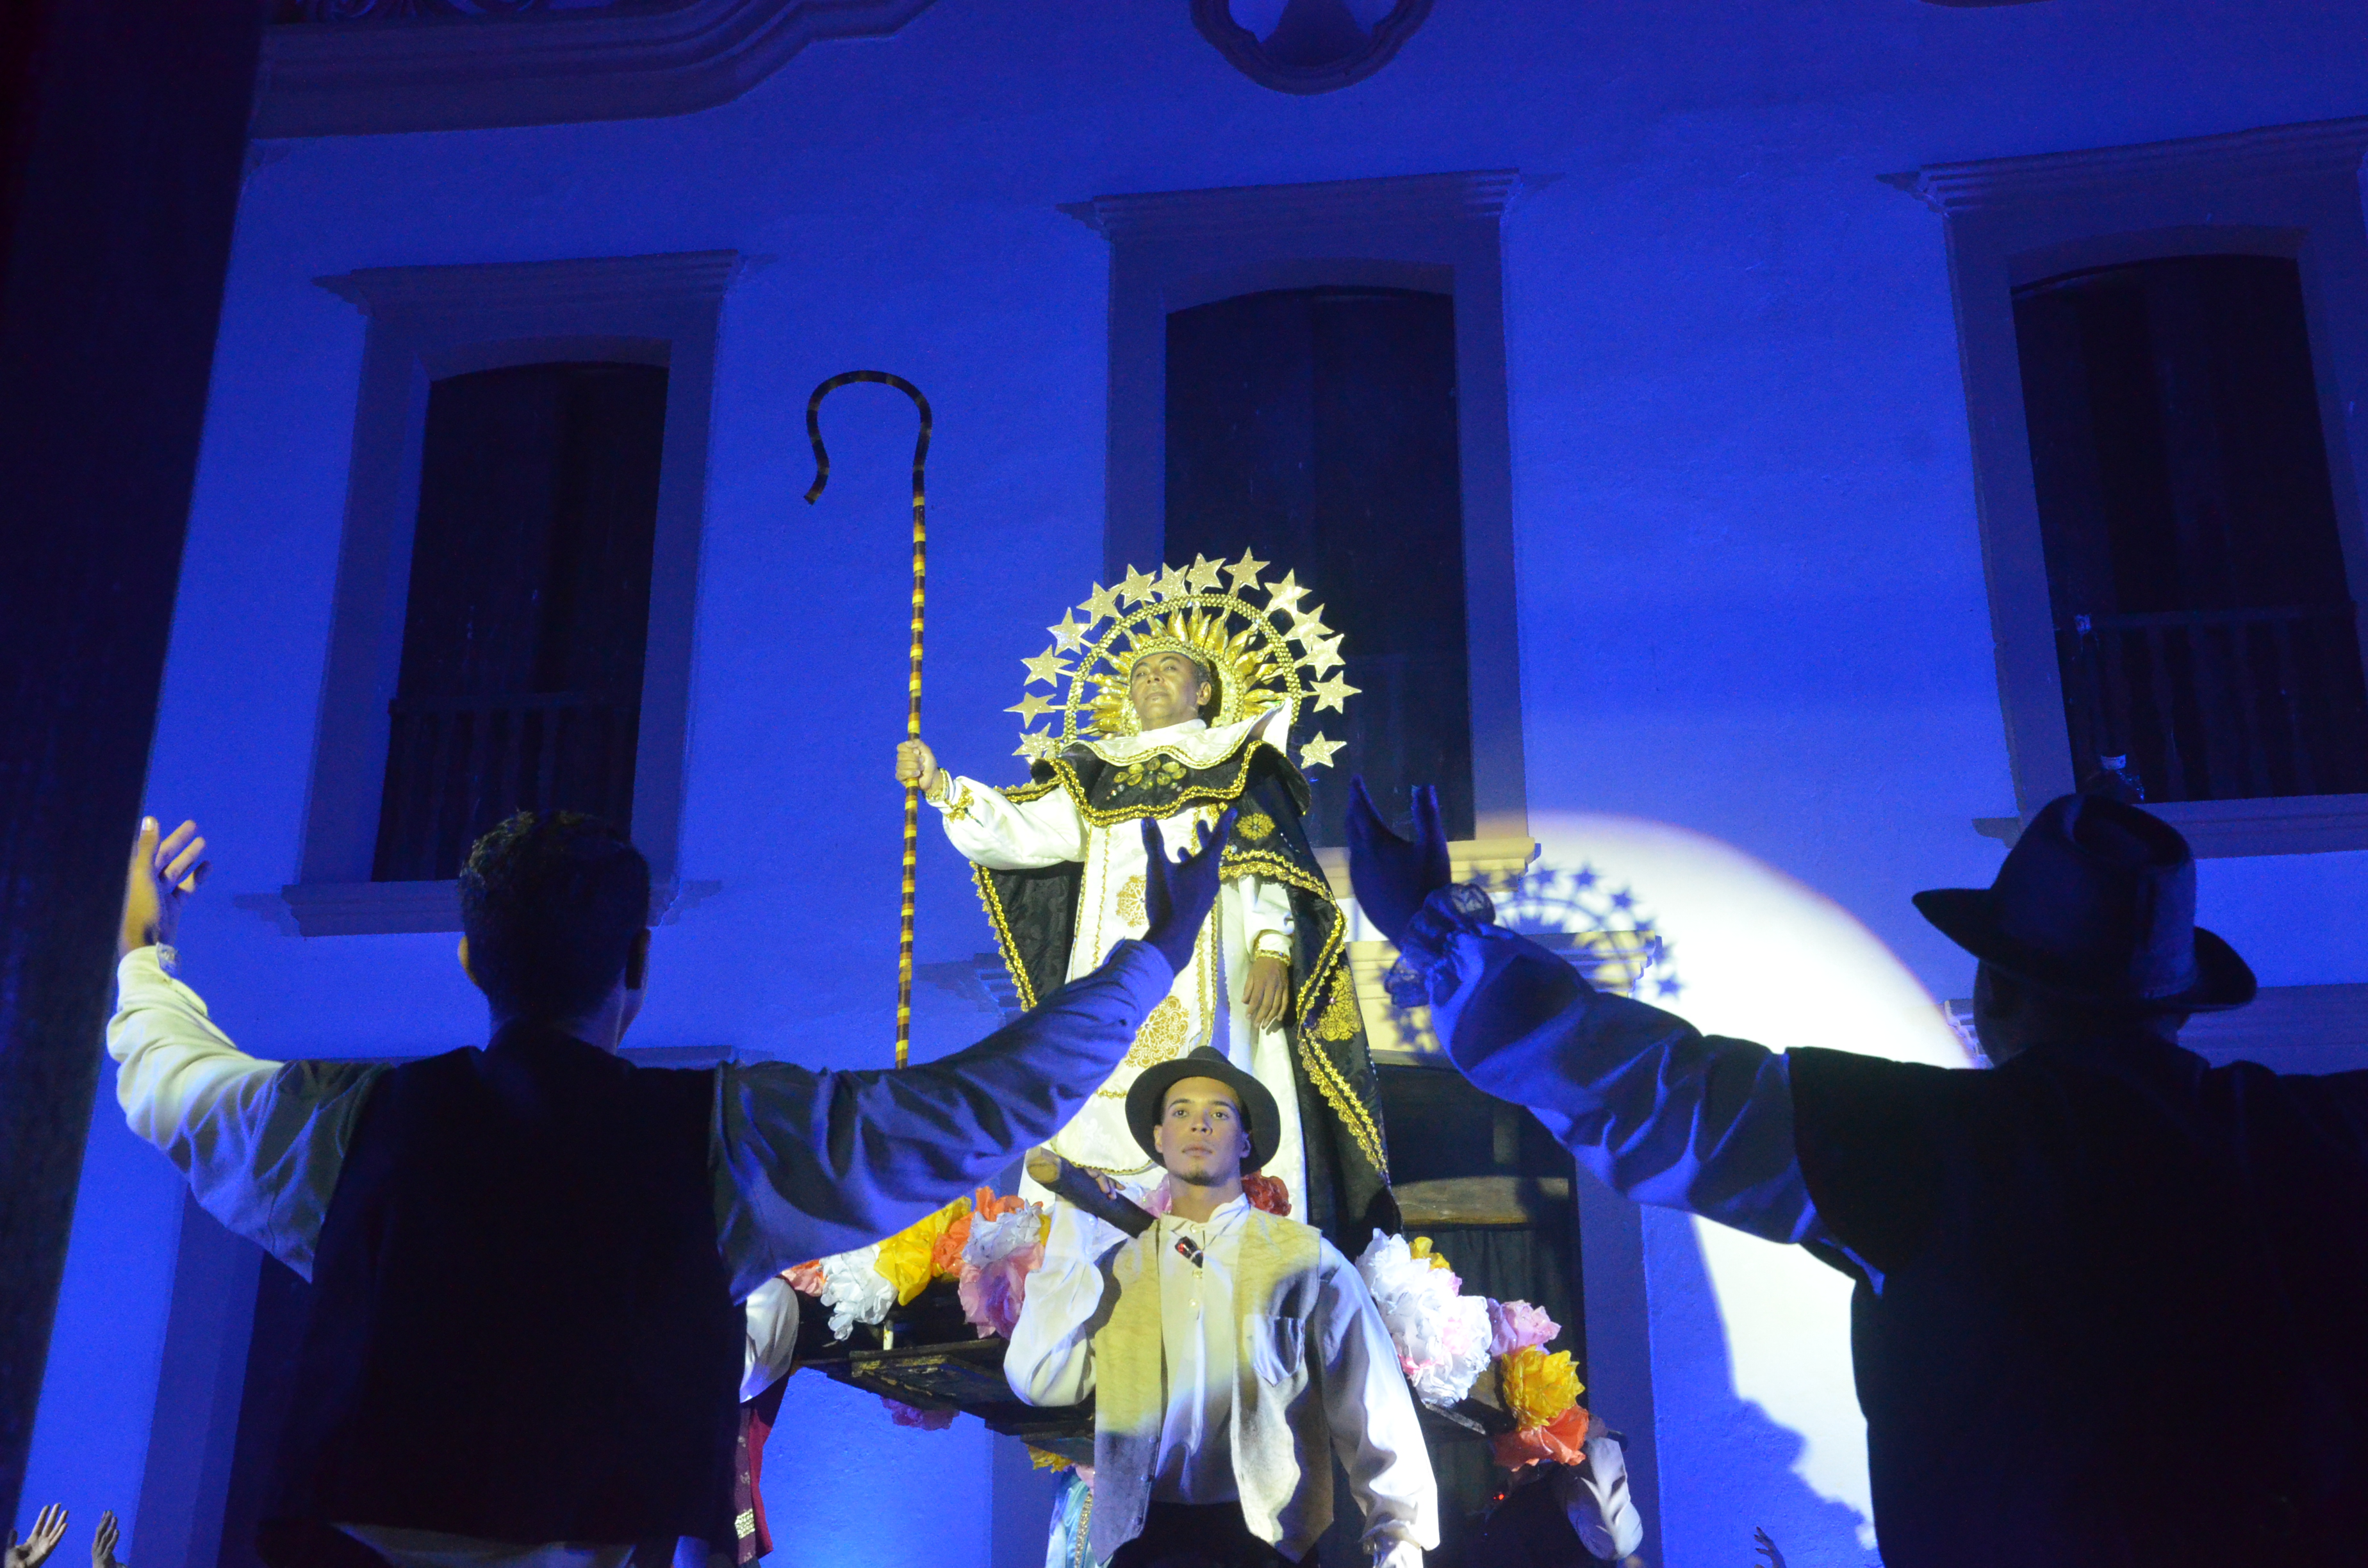 Prefeitura promove agenda cultural durantes festejos de São Gonçalo